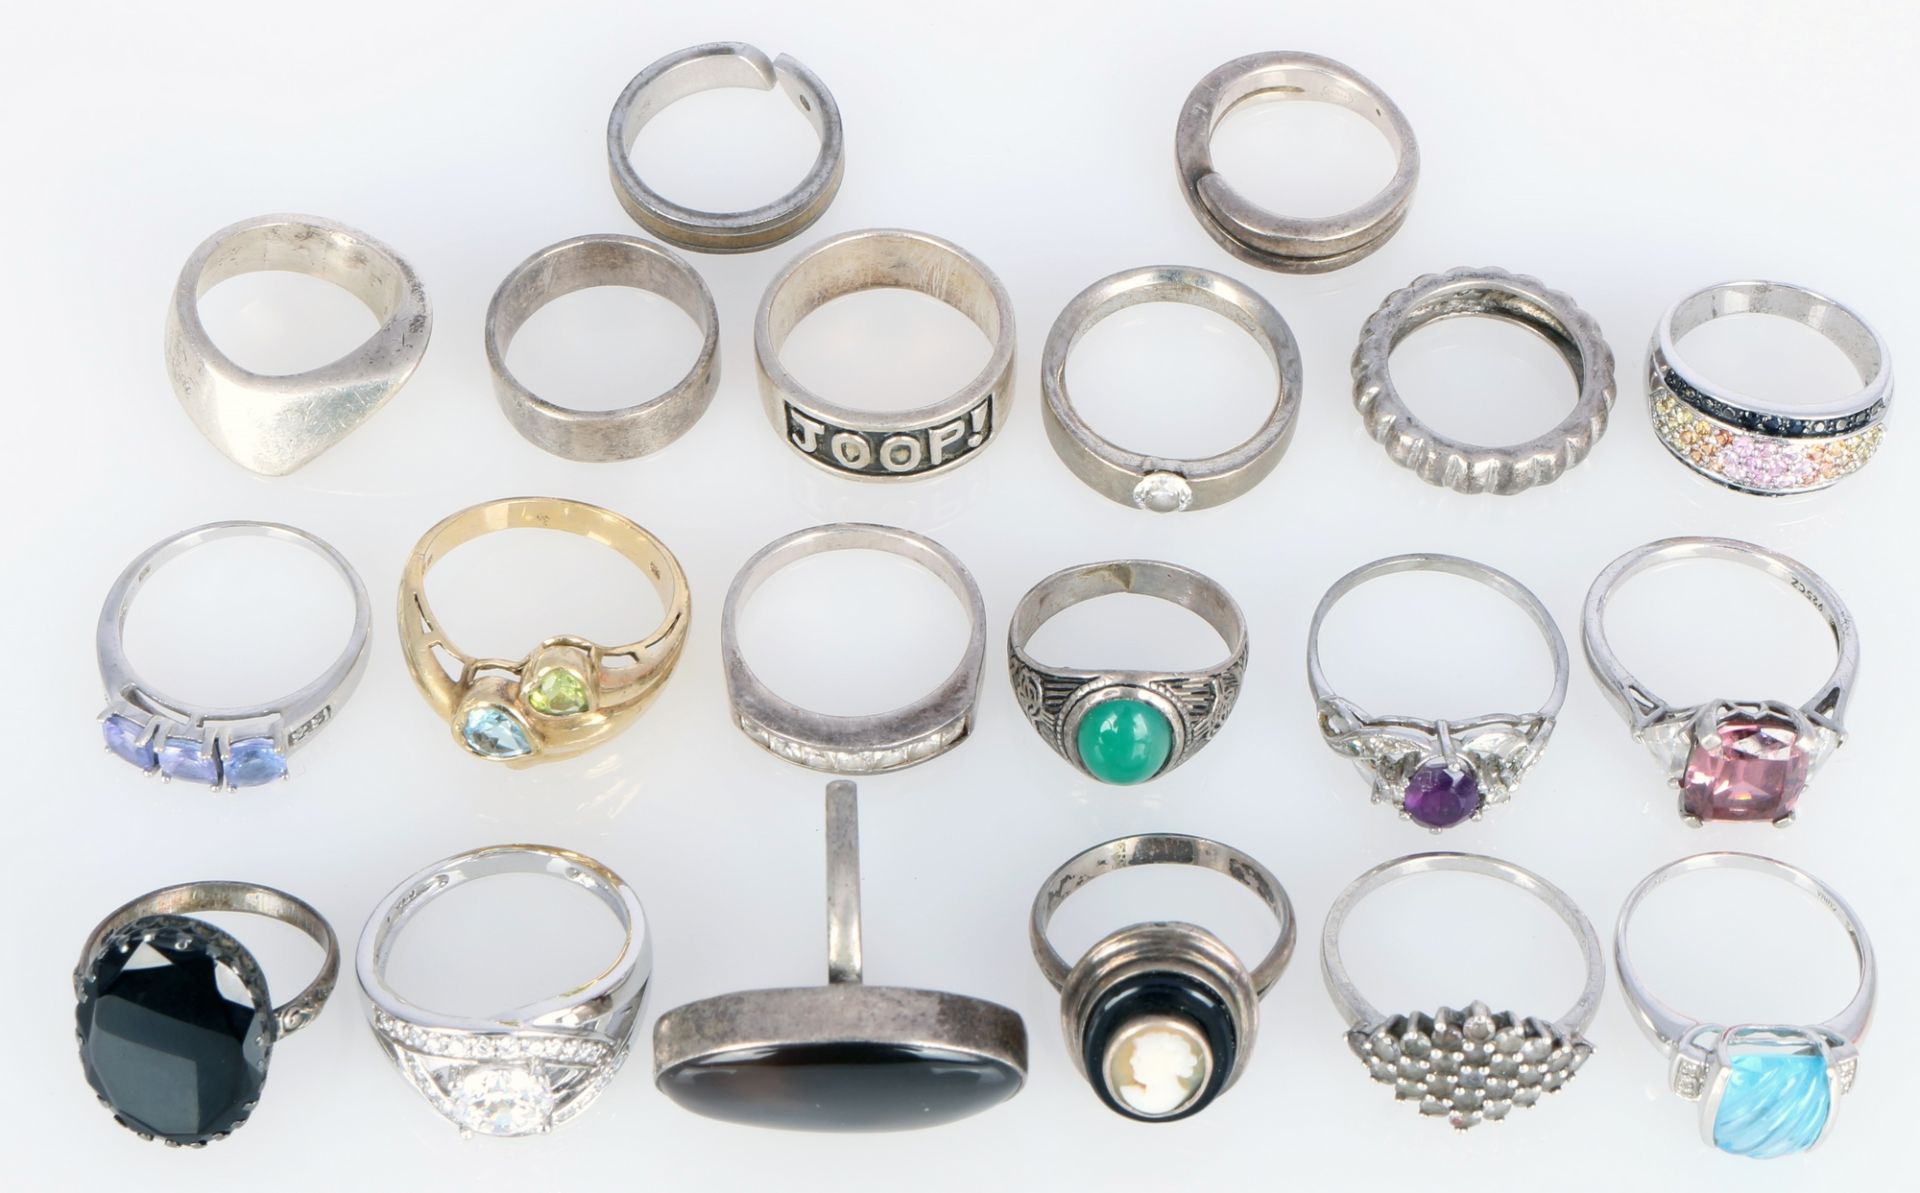 20 Silberringe 800-925 Silber, silver rings,